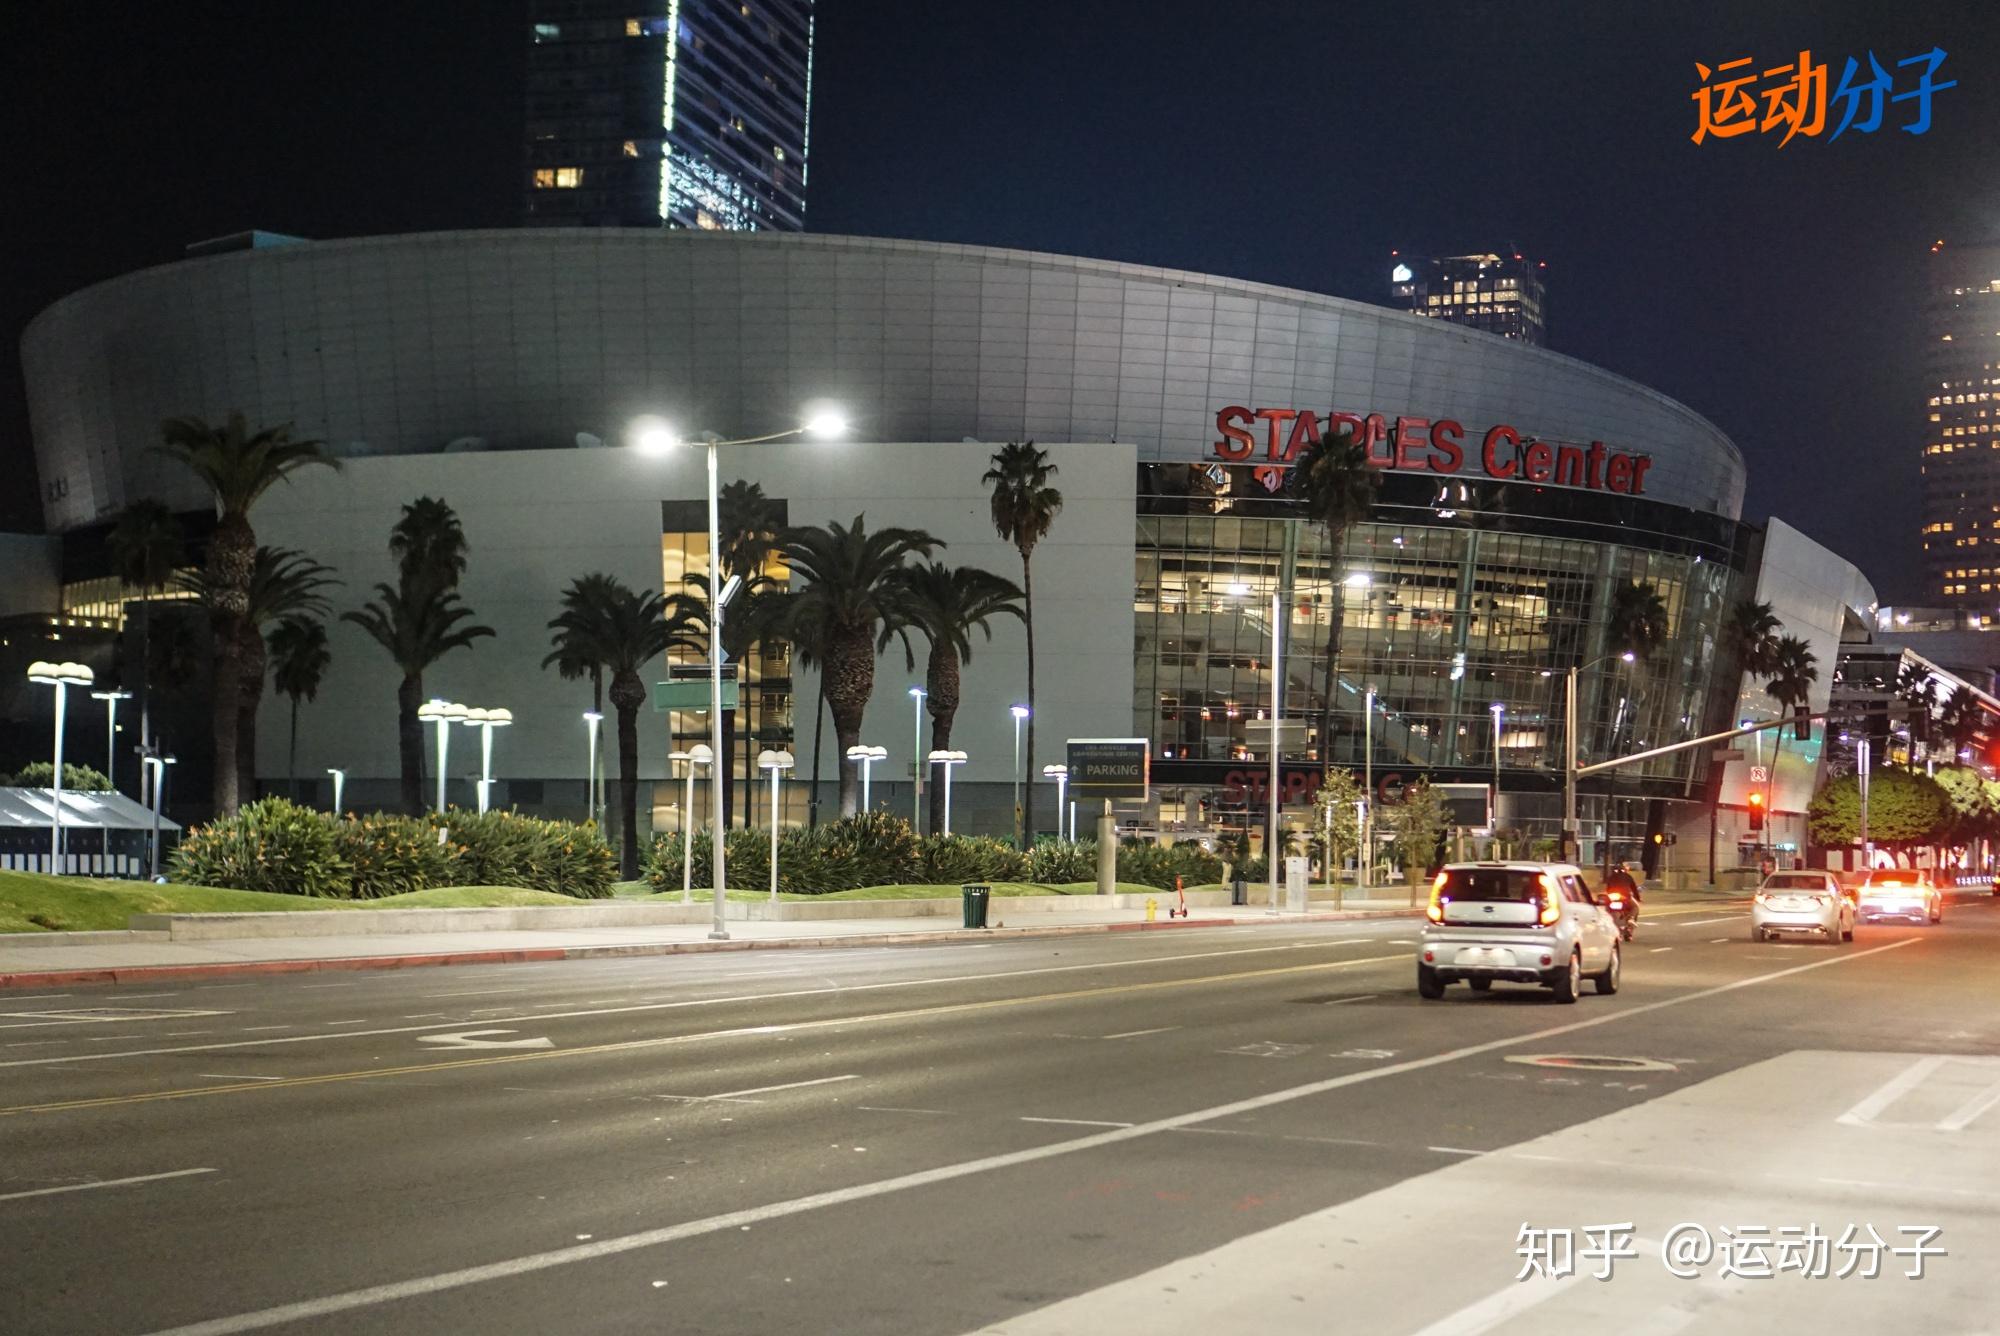 【携程攻略】洛杉矶斯台普斯中心景点,斯台普斯中心（Staples Center），位于美国加利福尼亚州洛杉矶市中心…